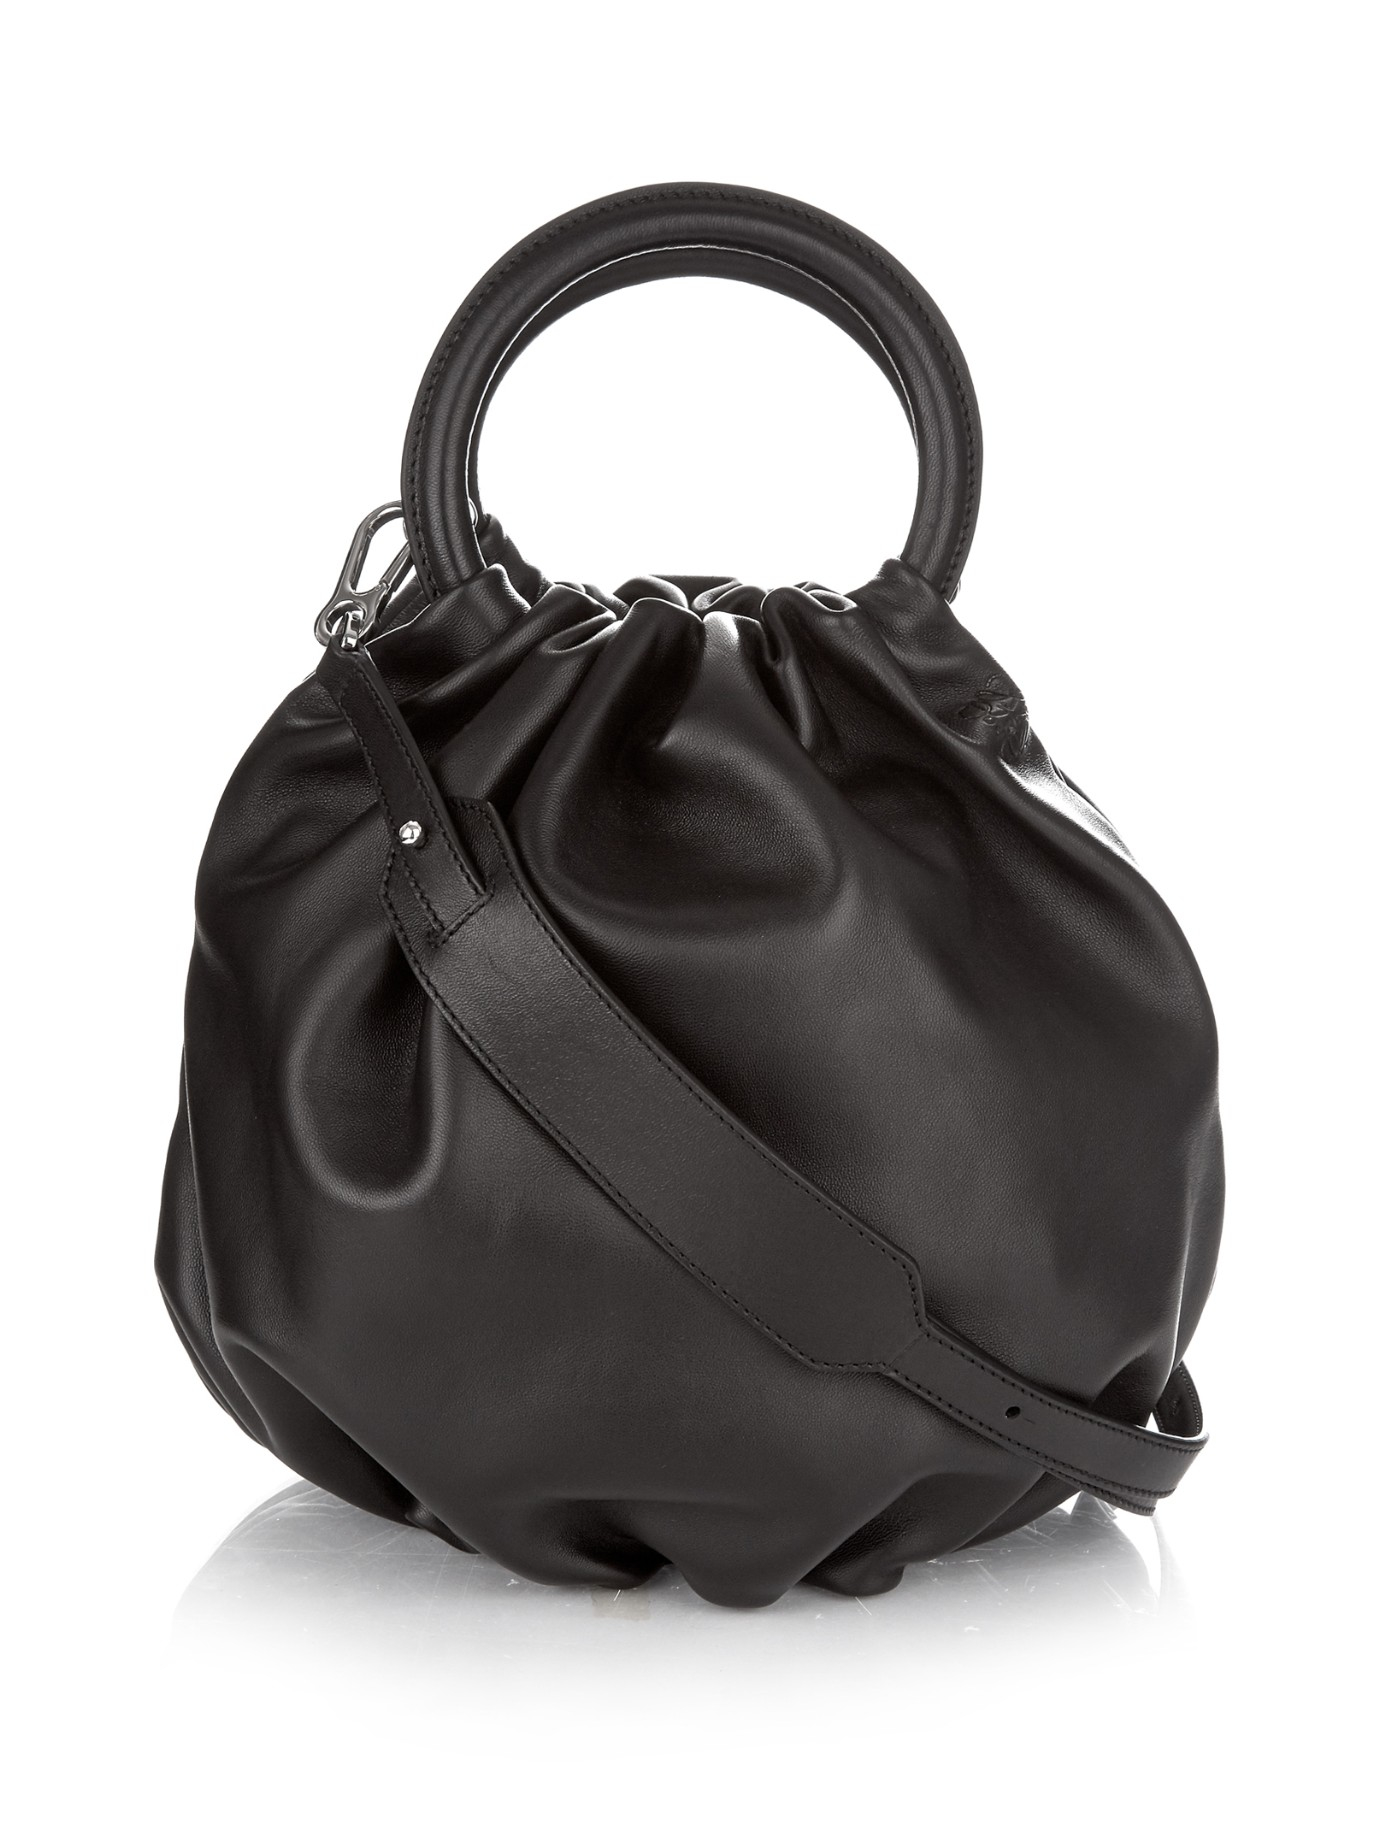 Loewe Bounce Leather Bucket Bag in Black - Lyst